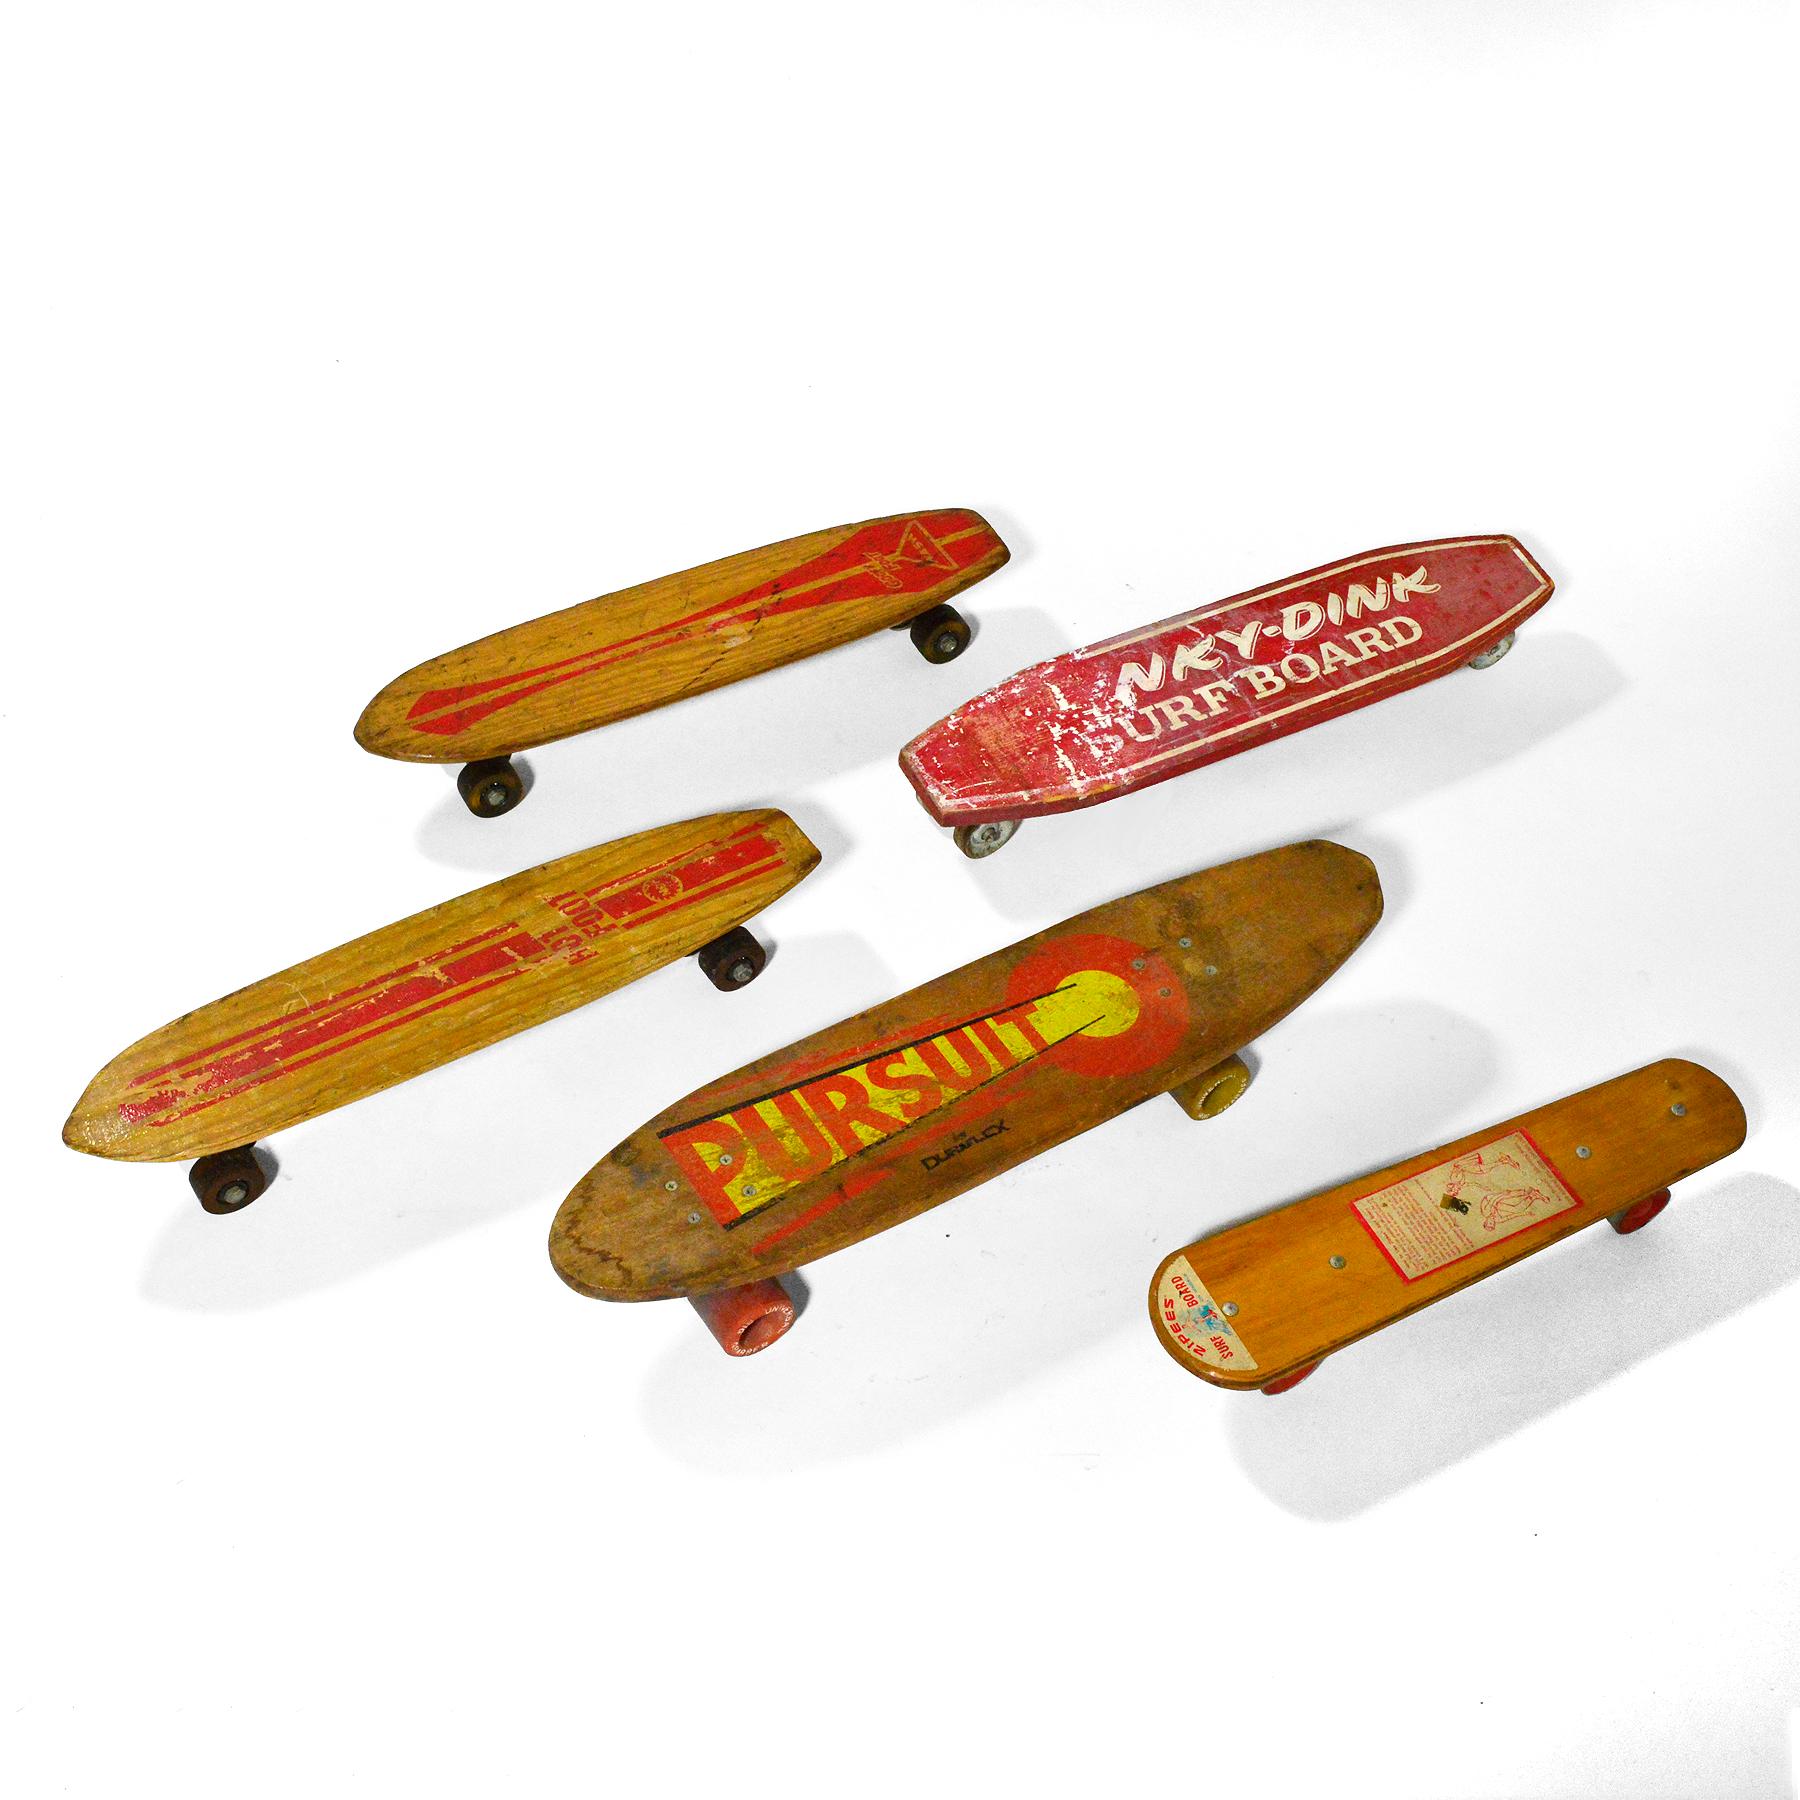 vintage skateboards for sale uk